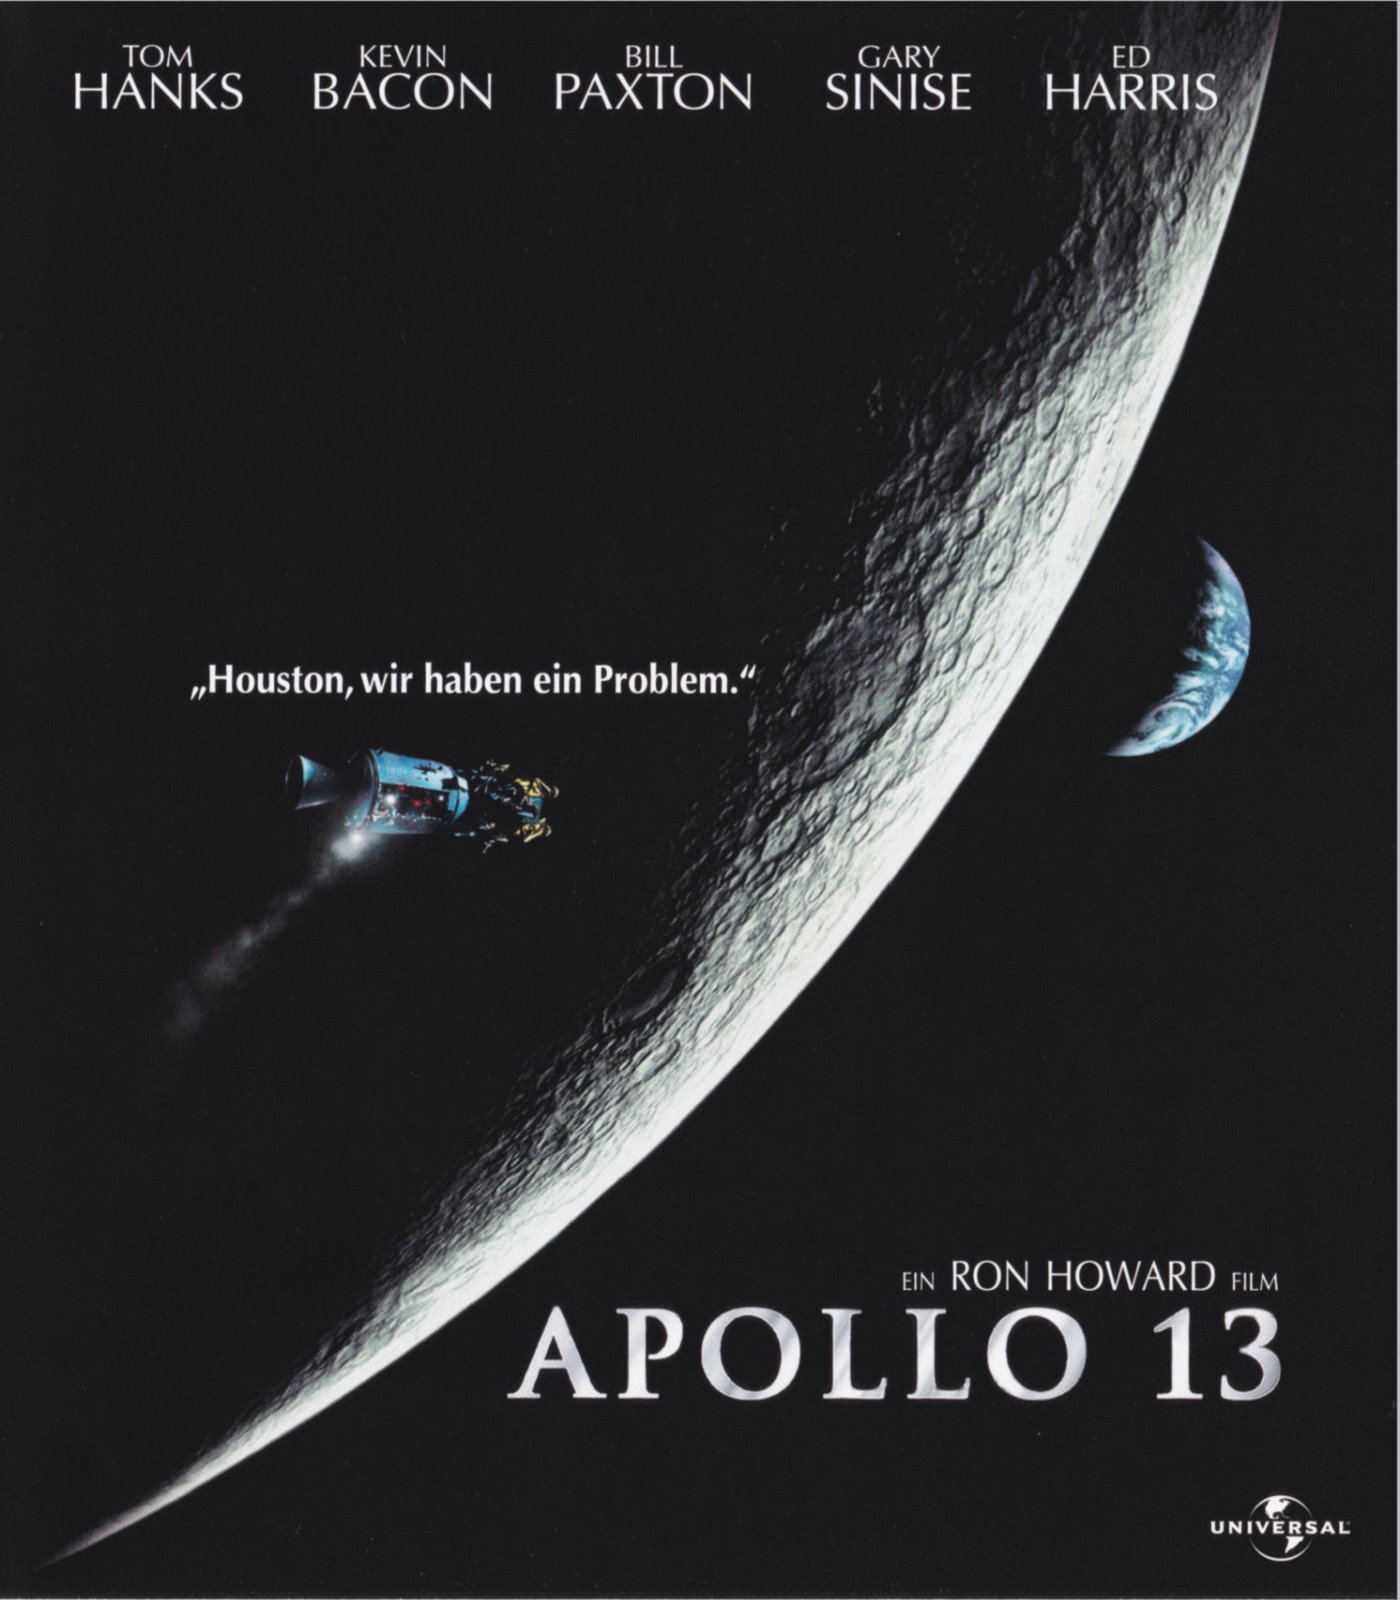 Cover - Apollo 13.jpg